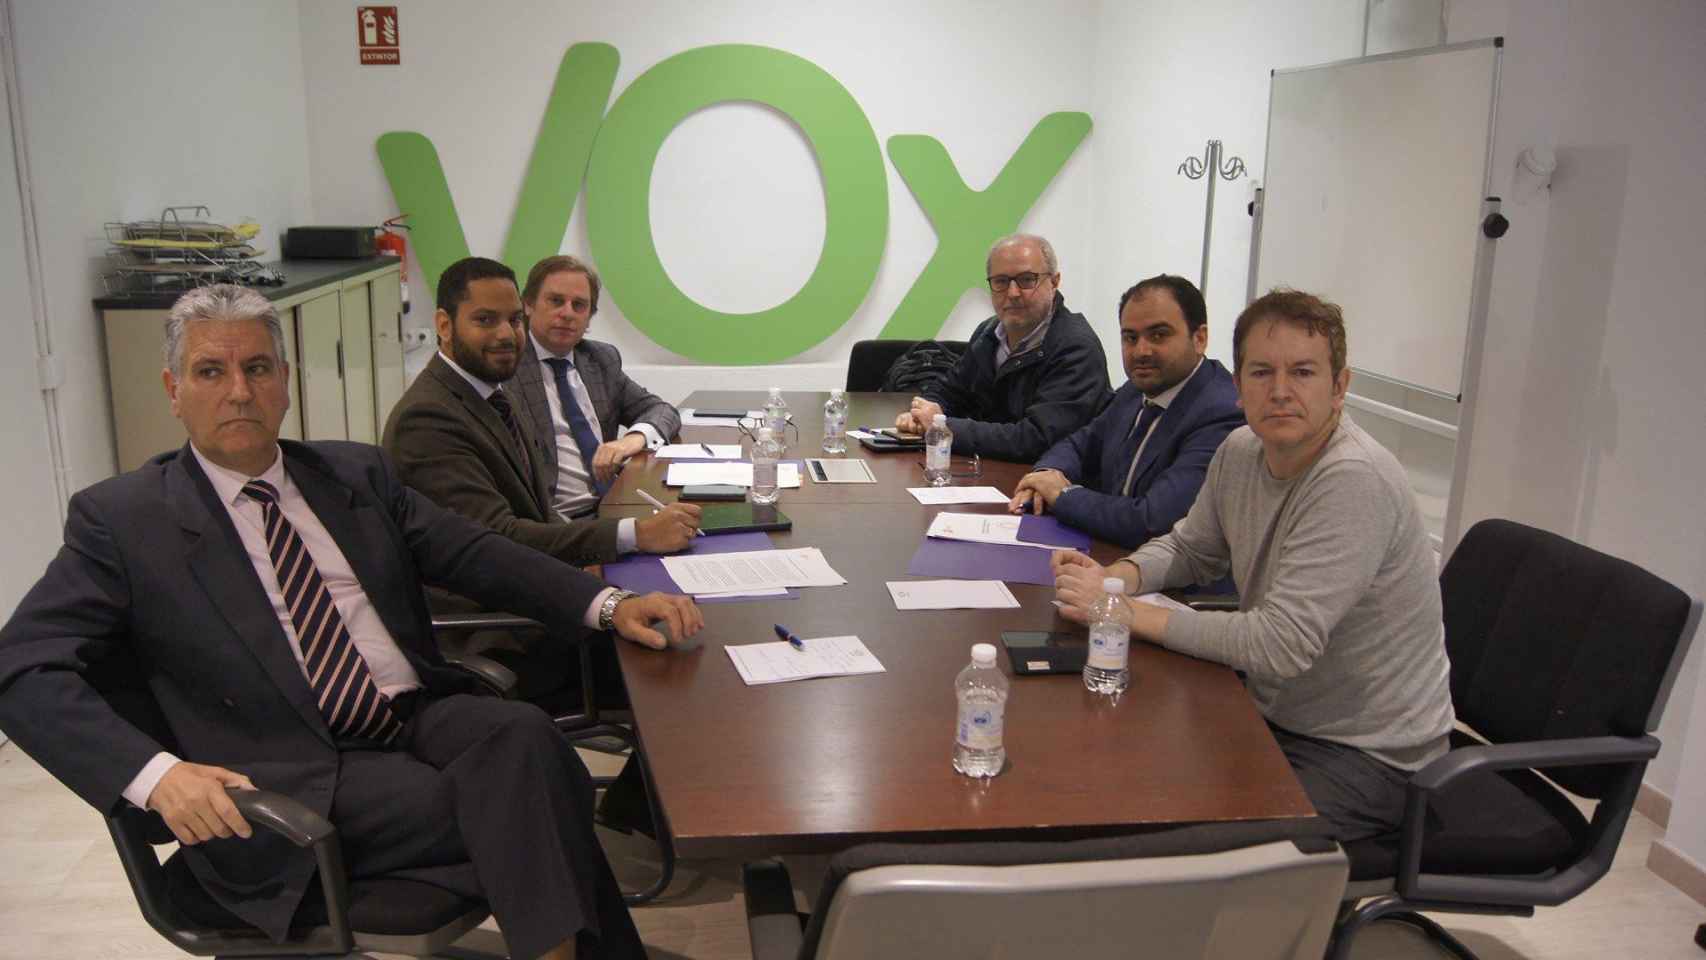 Representantes de Vox se reúnen con dirigentes de Societat Civil Catalana (SCC), entre ellos su presidente, Fernando Sánchez Costa / SCC